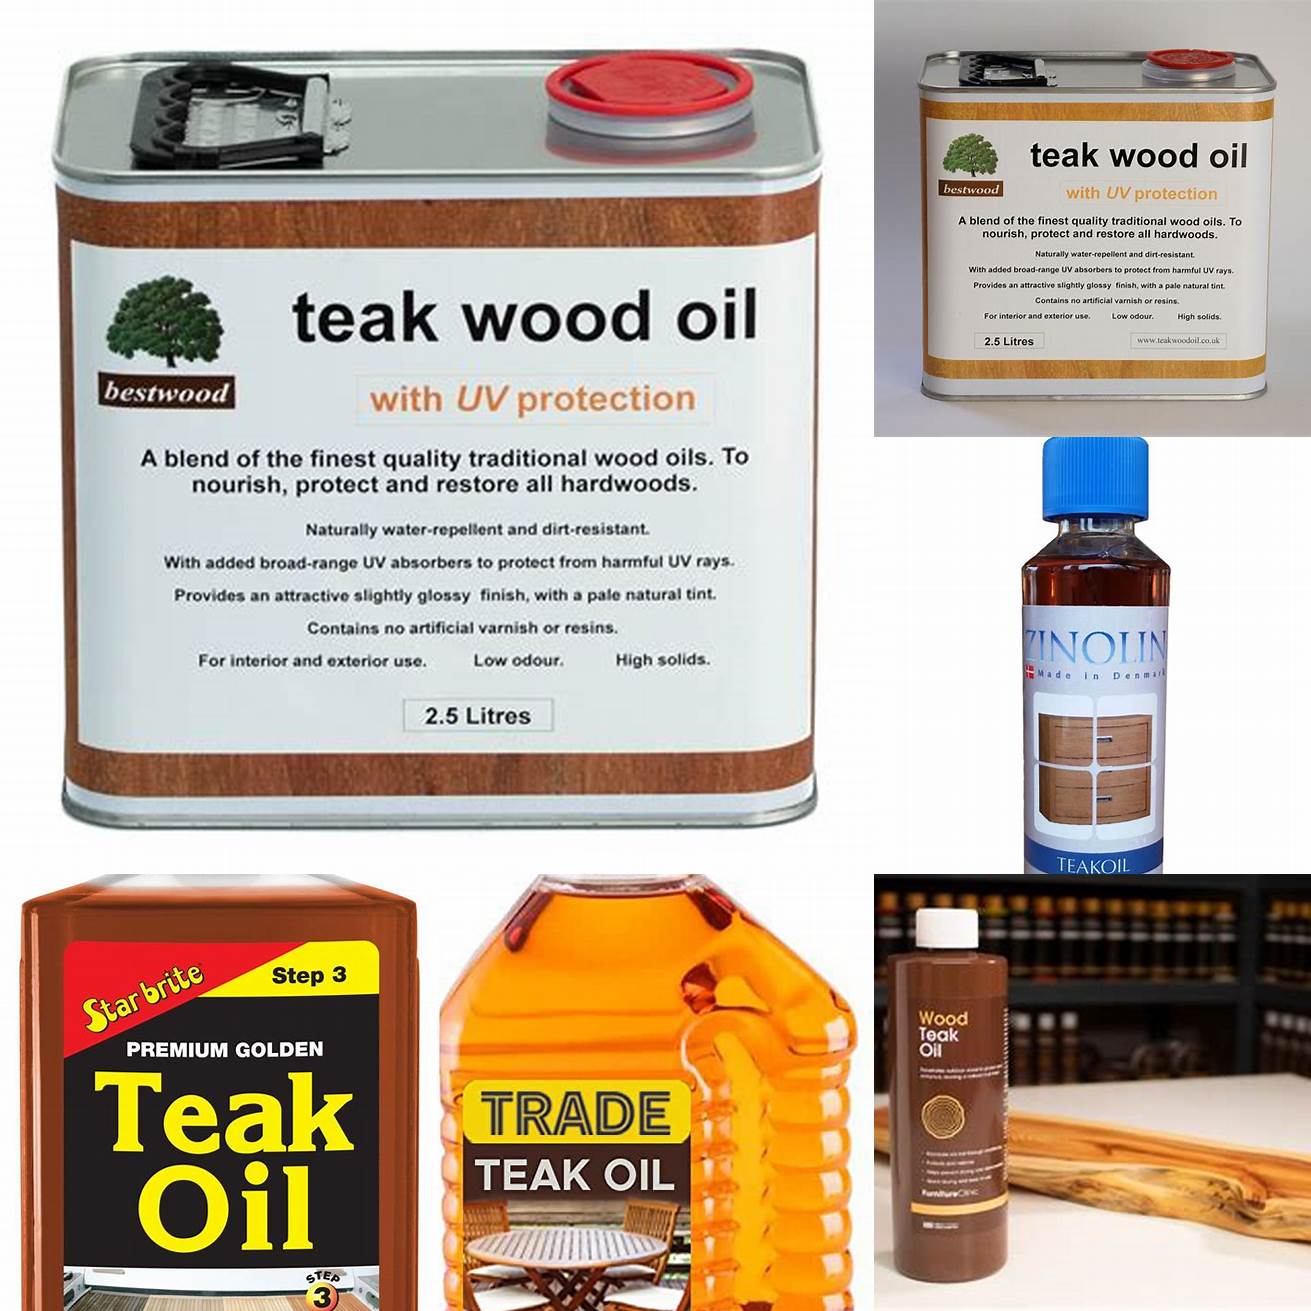 Teak Oil Packaging